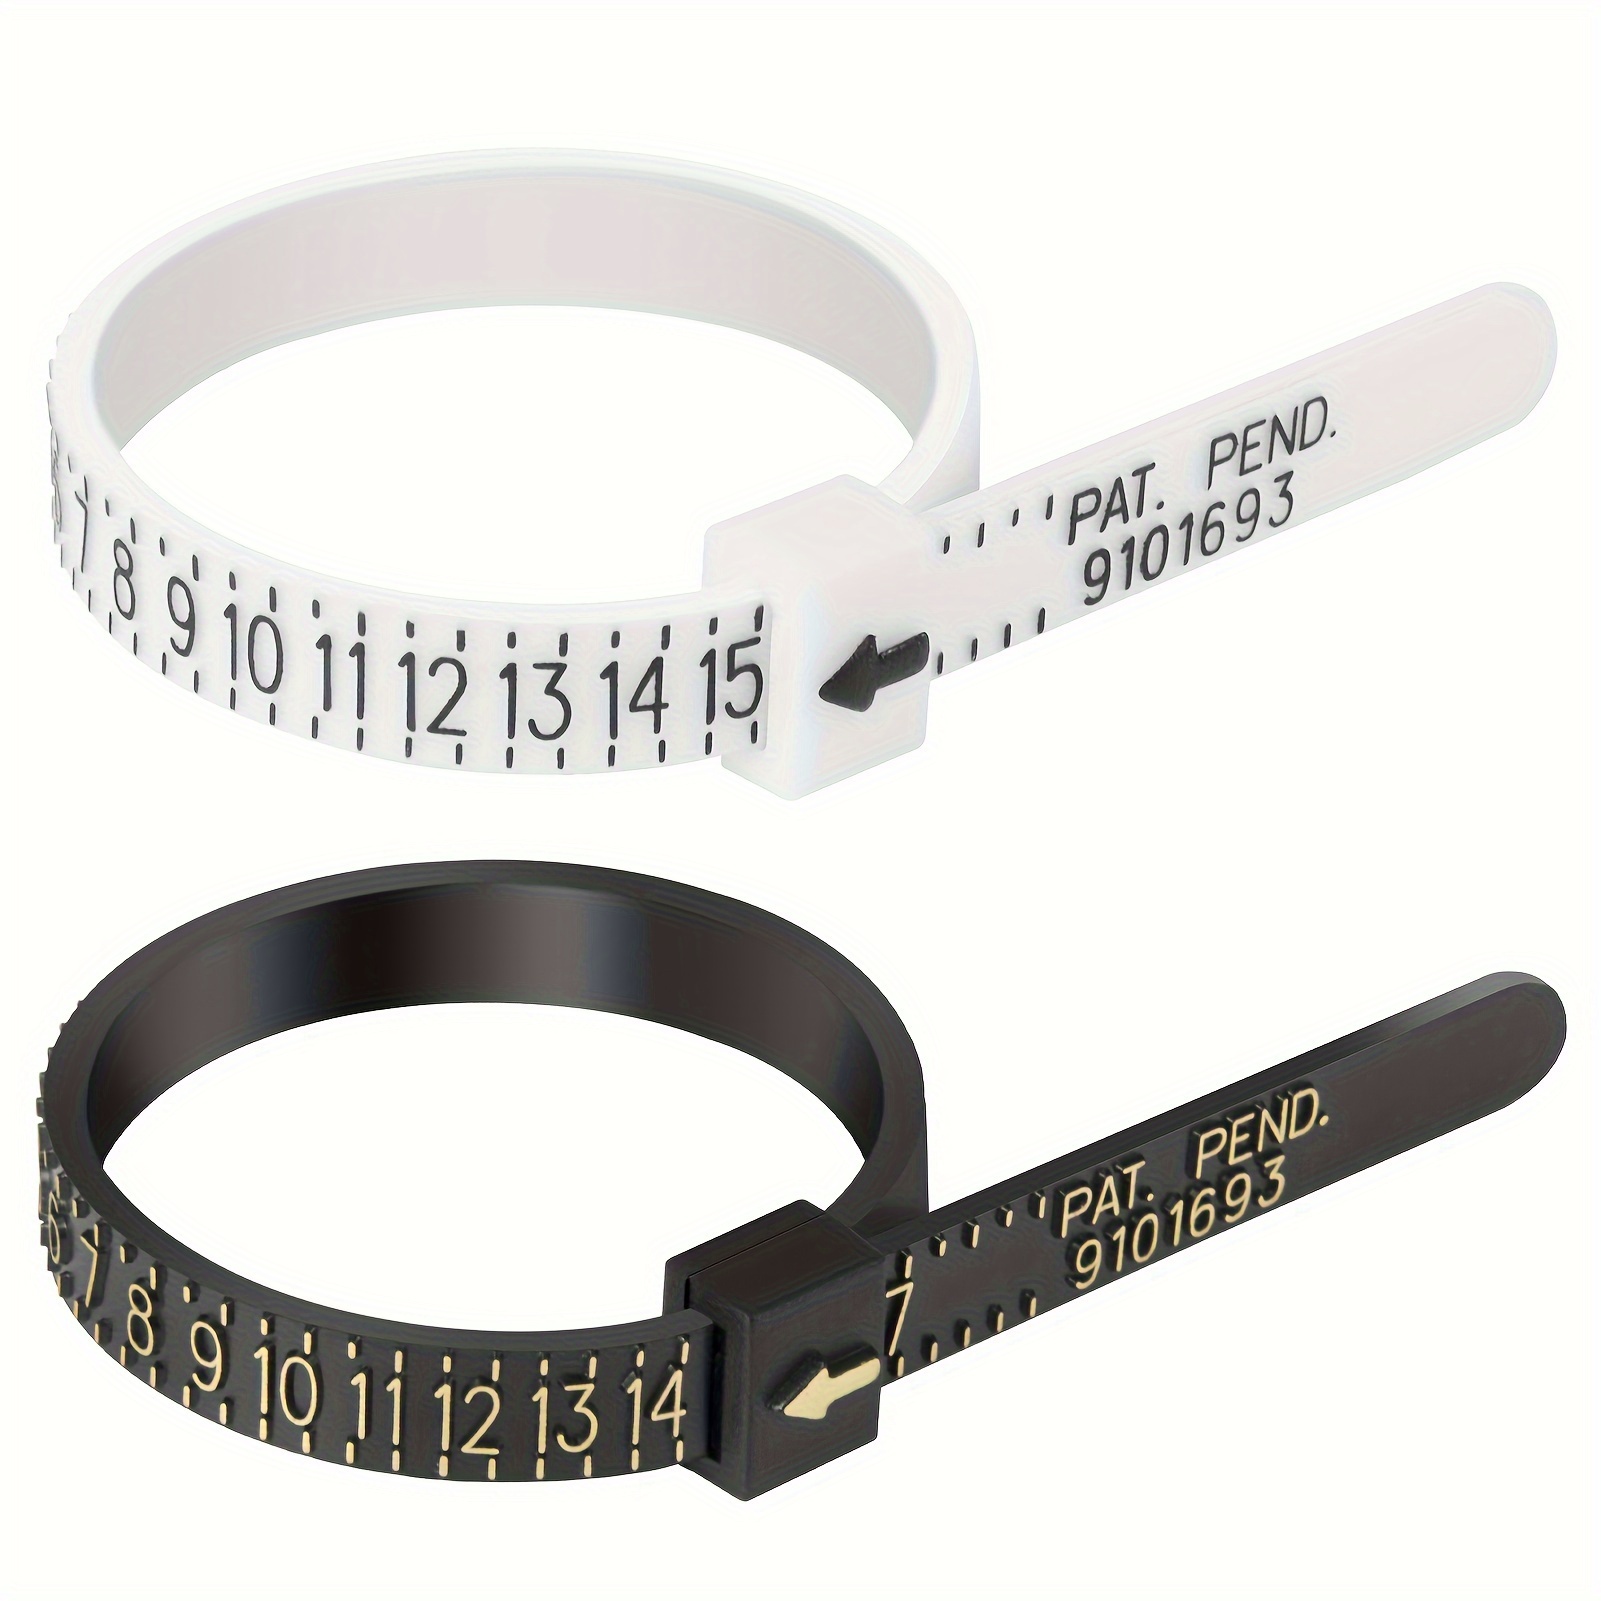 Ring Sizer Measuring Tool, 0-13mm Aluminum Ring Mandrel Ring Sizer Guage, 4  Sizes Ring Measurement Stick Metal Mandrel Finger Sizing Measuring Tool Set  For Women Men Rings Making Measuring